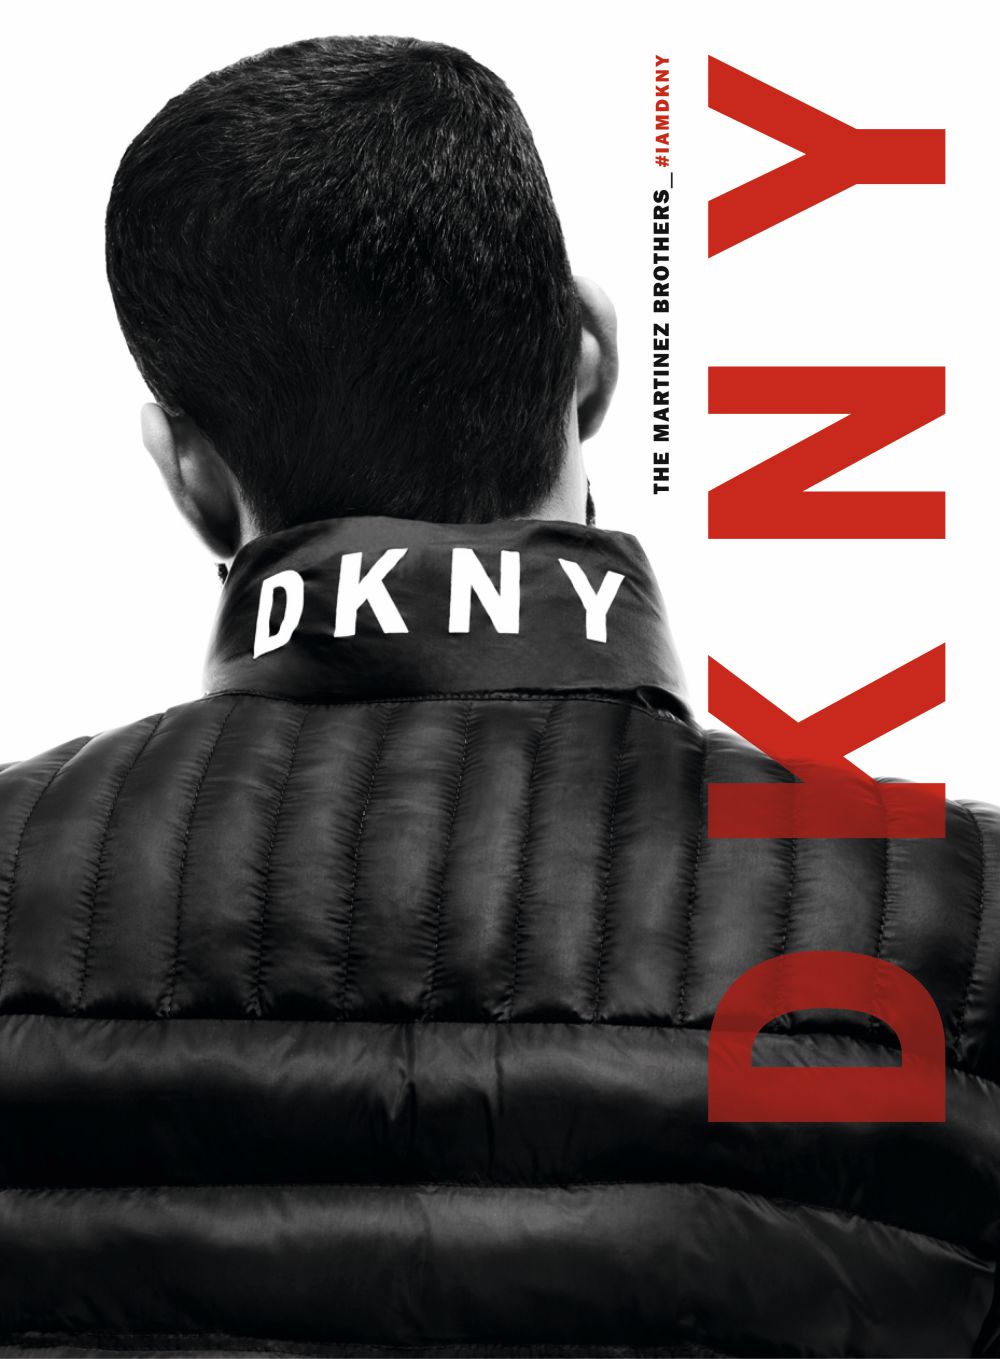 DKNY FW 2019 campaign The Martinez Brothers bomber jacket - DKNY秋冬2019歌颂纽约时尚